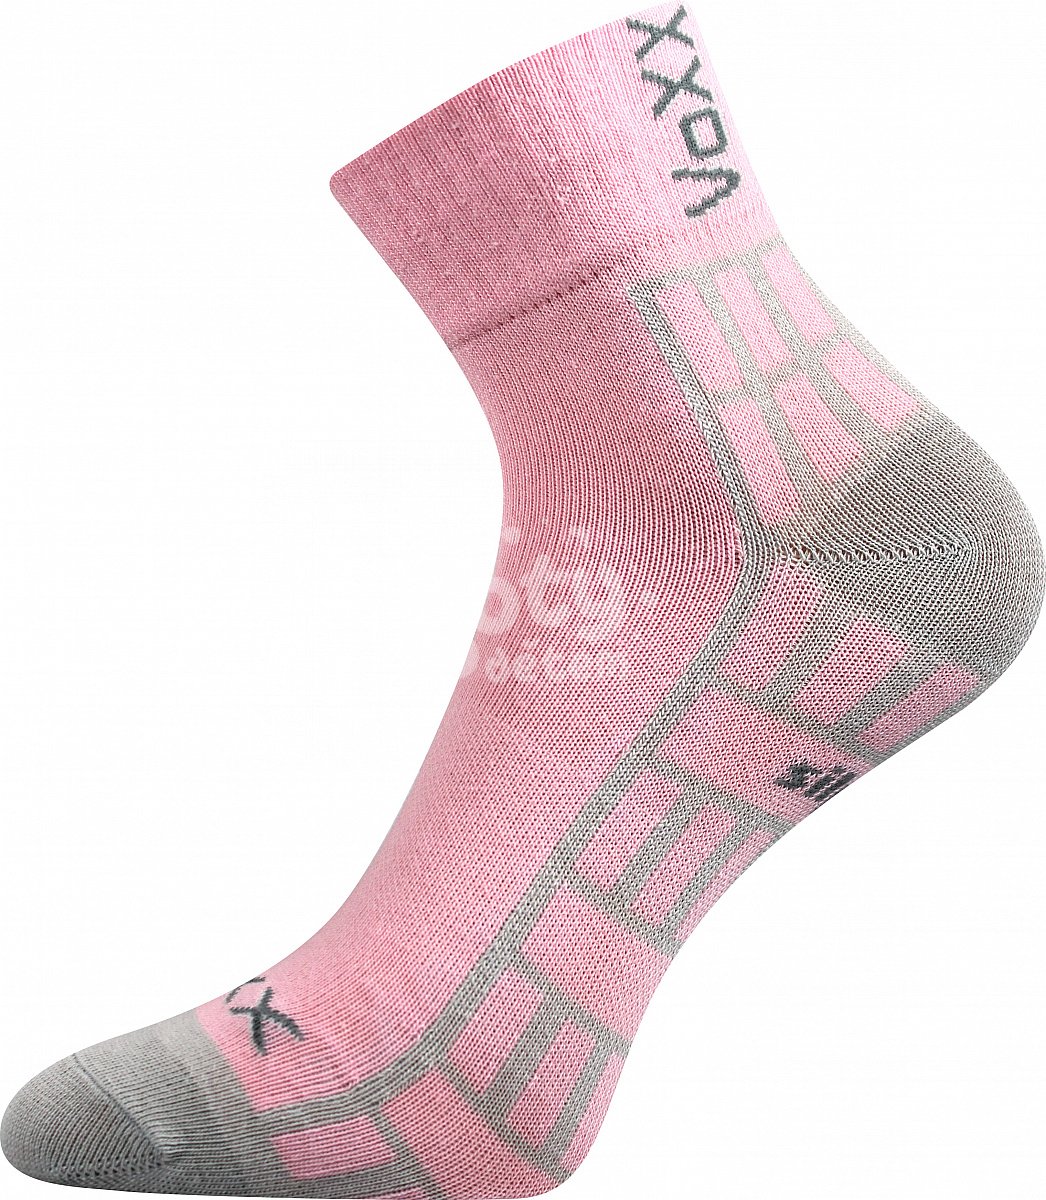 Ponožky VoXX Maik silproX mix 3 páry holka